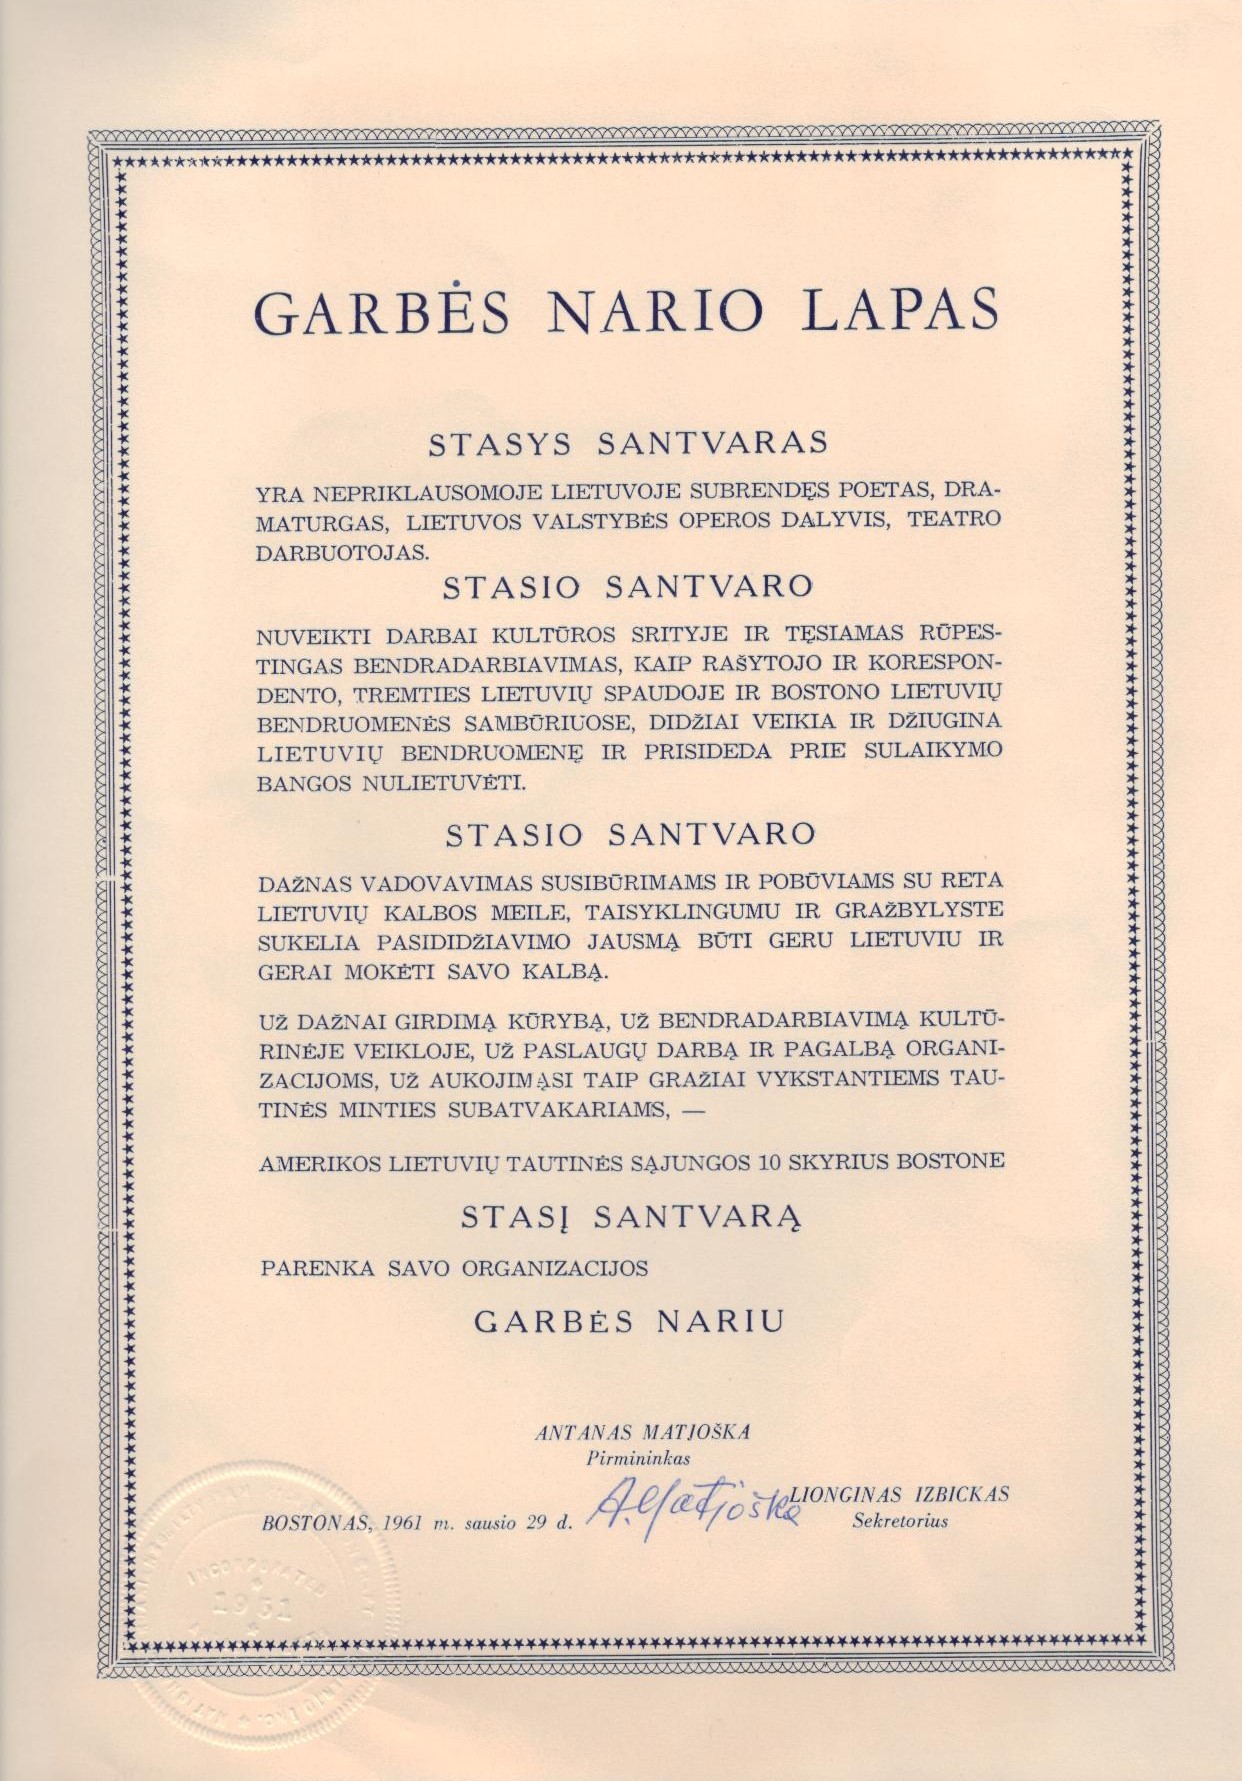 Amerikos lietuvių tautinės sąjungos Bostono skyriaus Garbės nario lapas Stasiui Santvarui. Bostonas. 1961 m. sausio 29 d. MLLM 62938